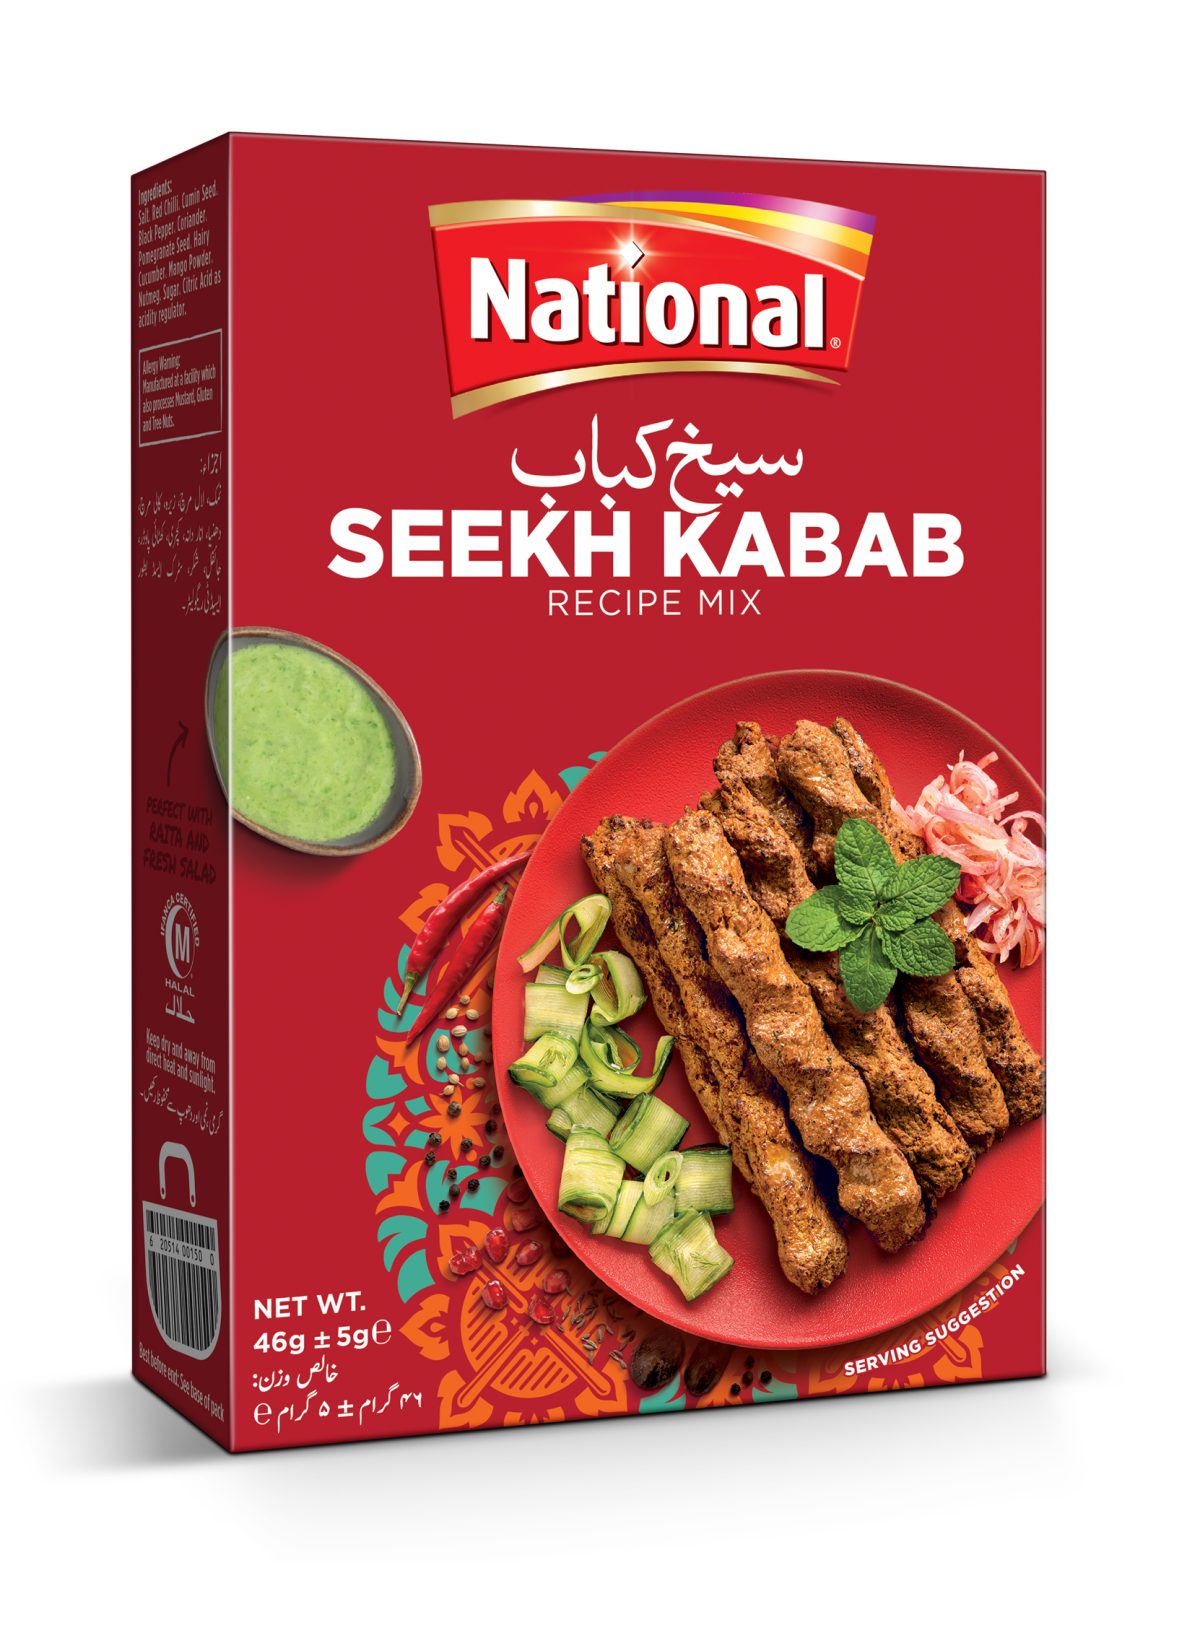 National Seekh Kabab Recipe Mix